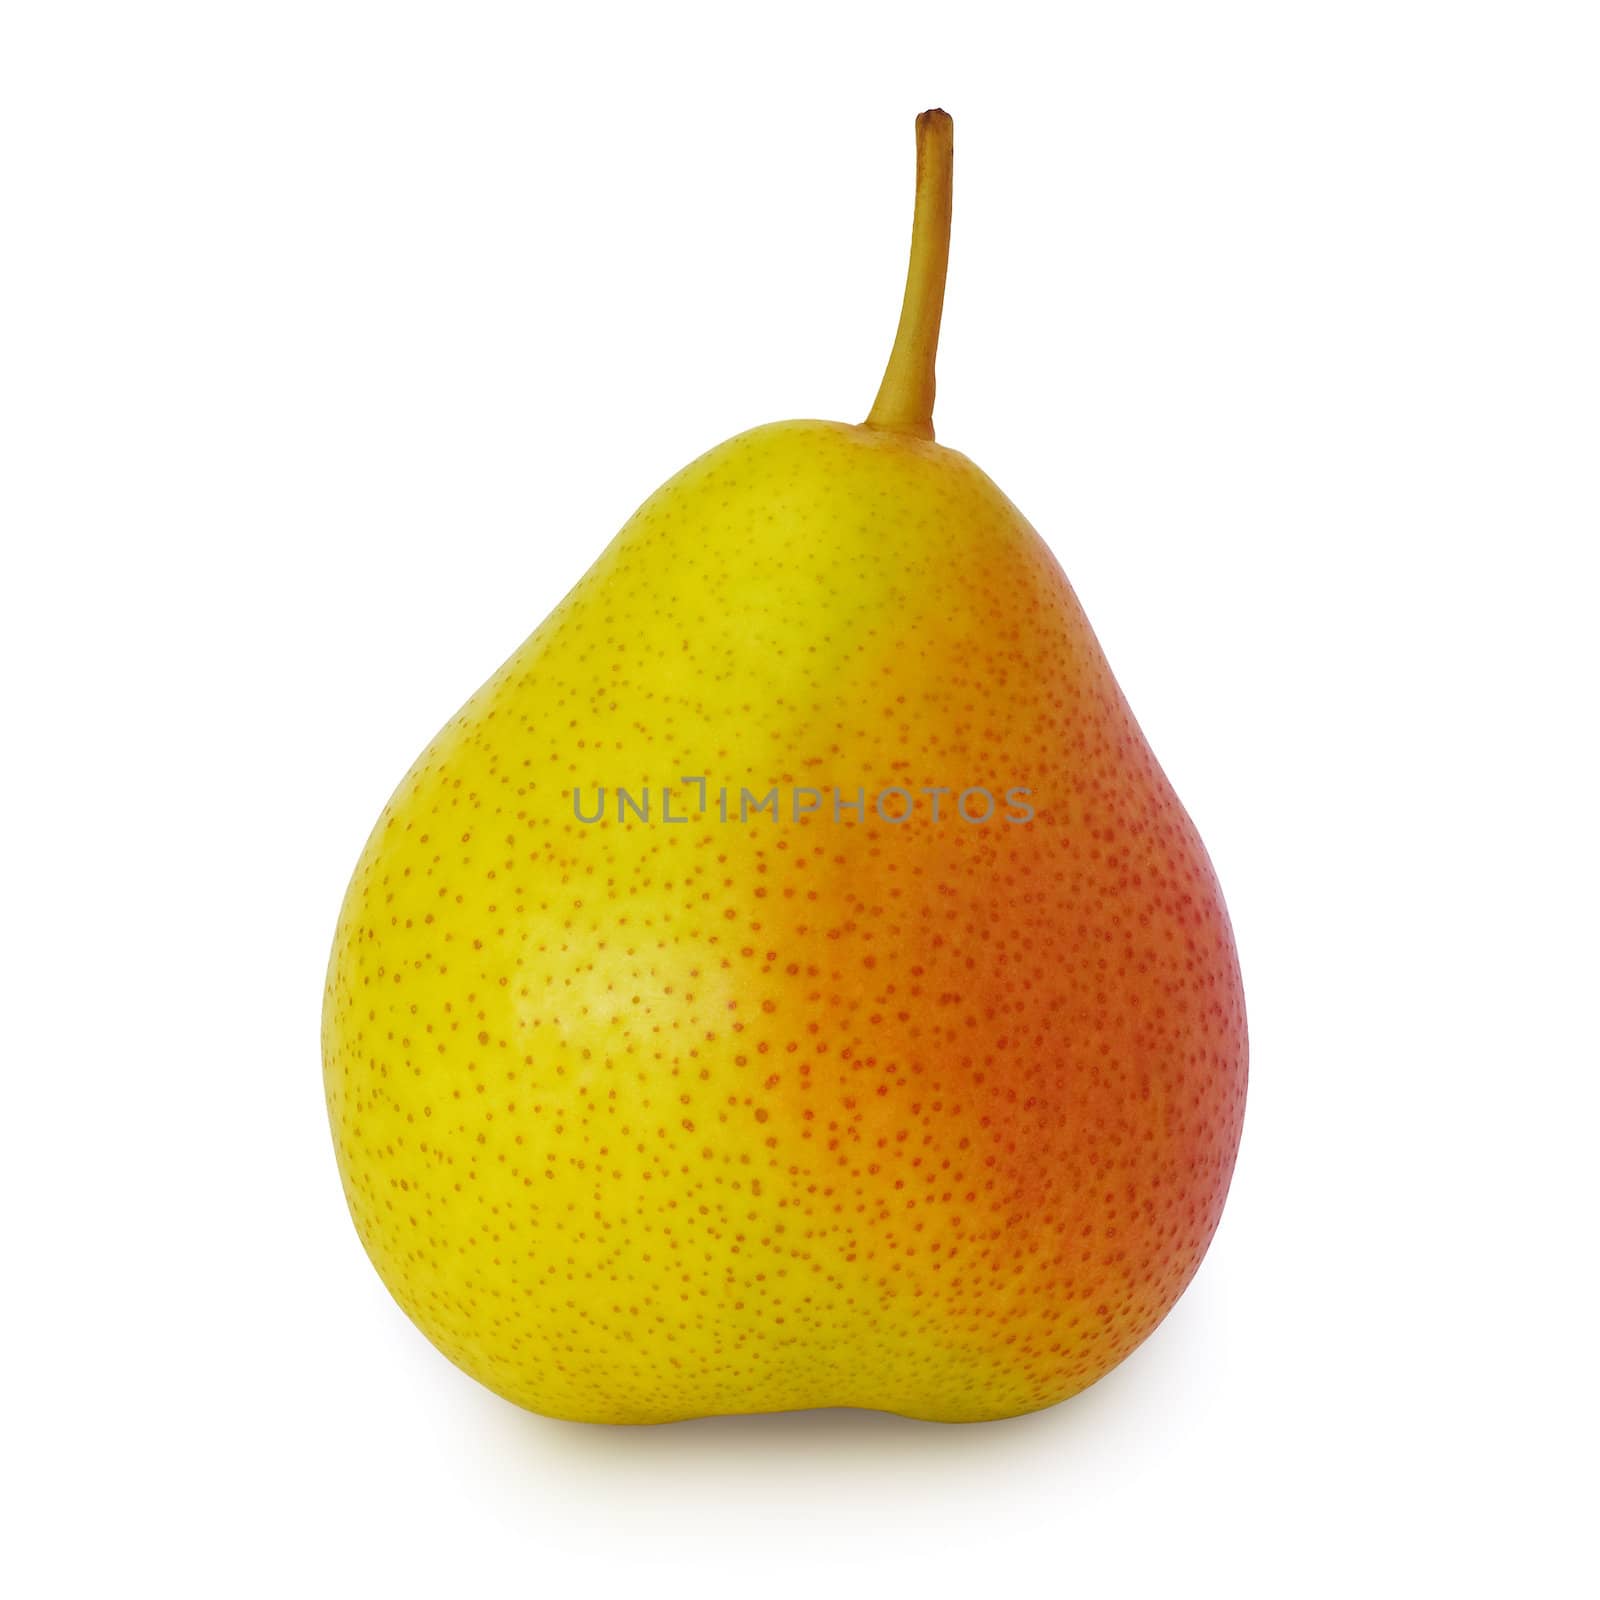 Pear by maxkrasnov